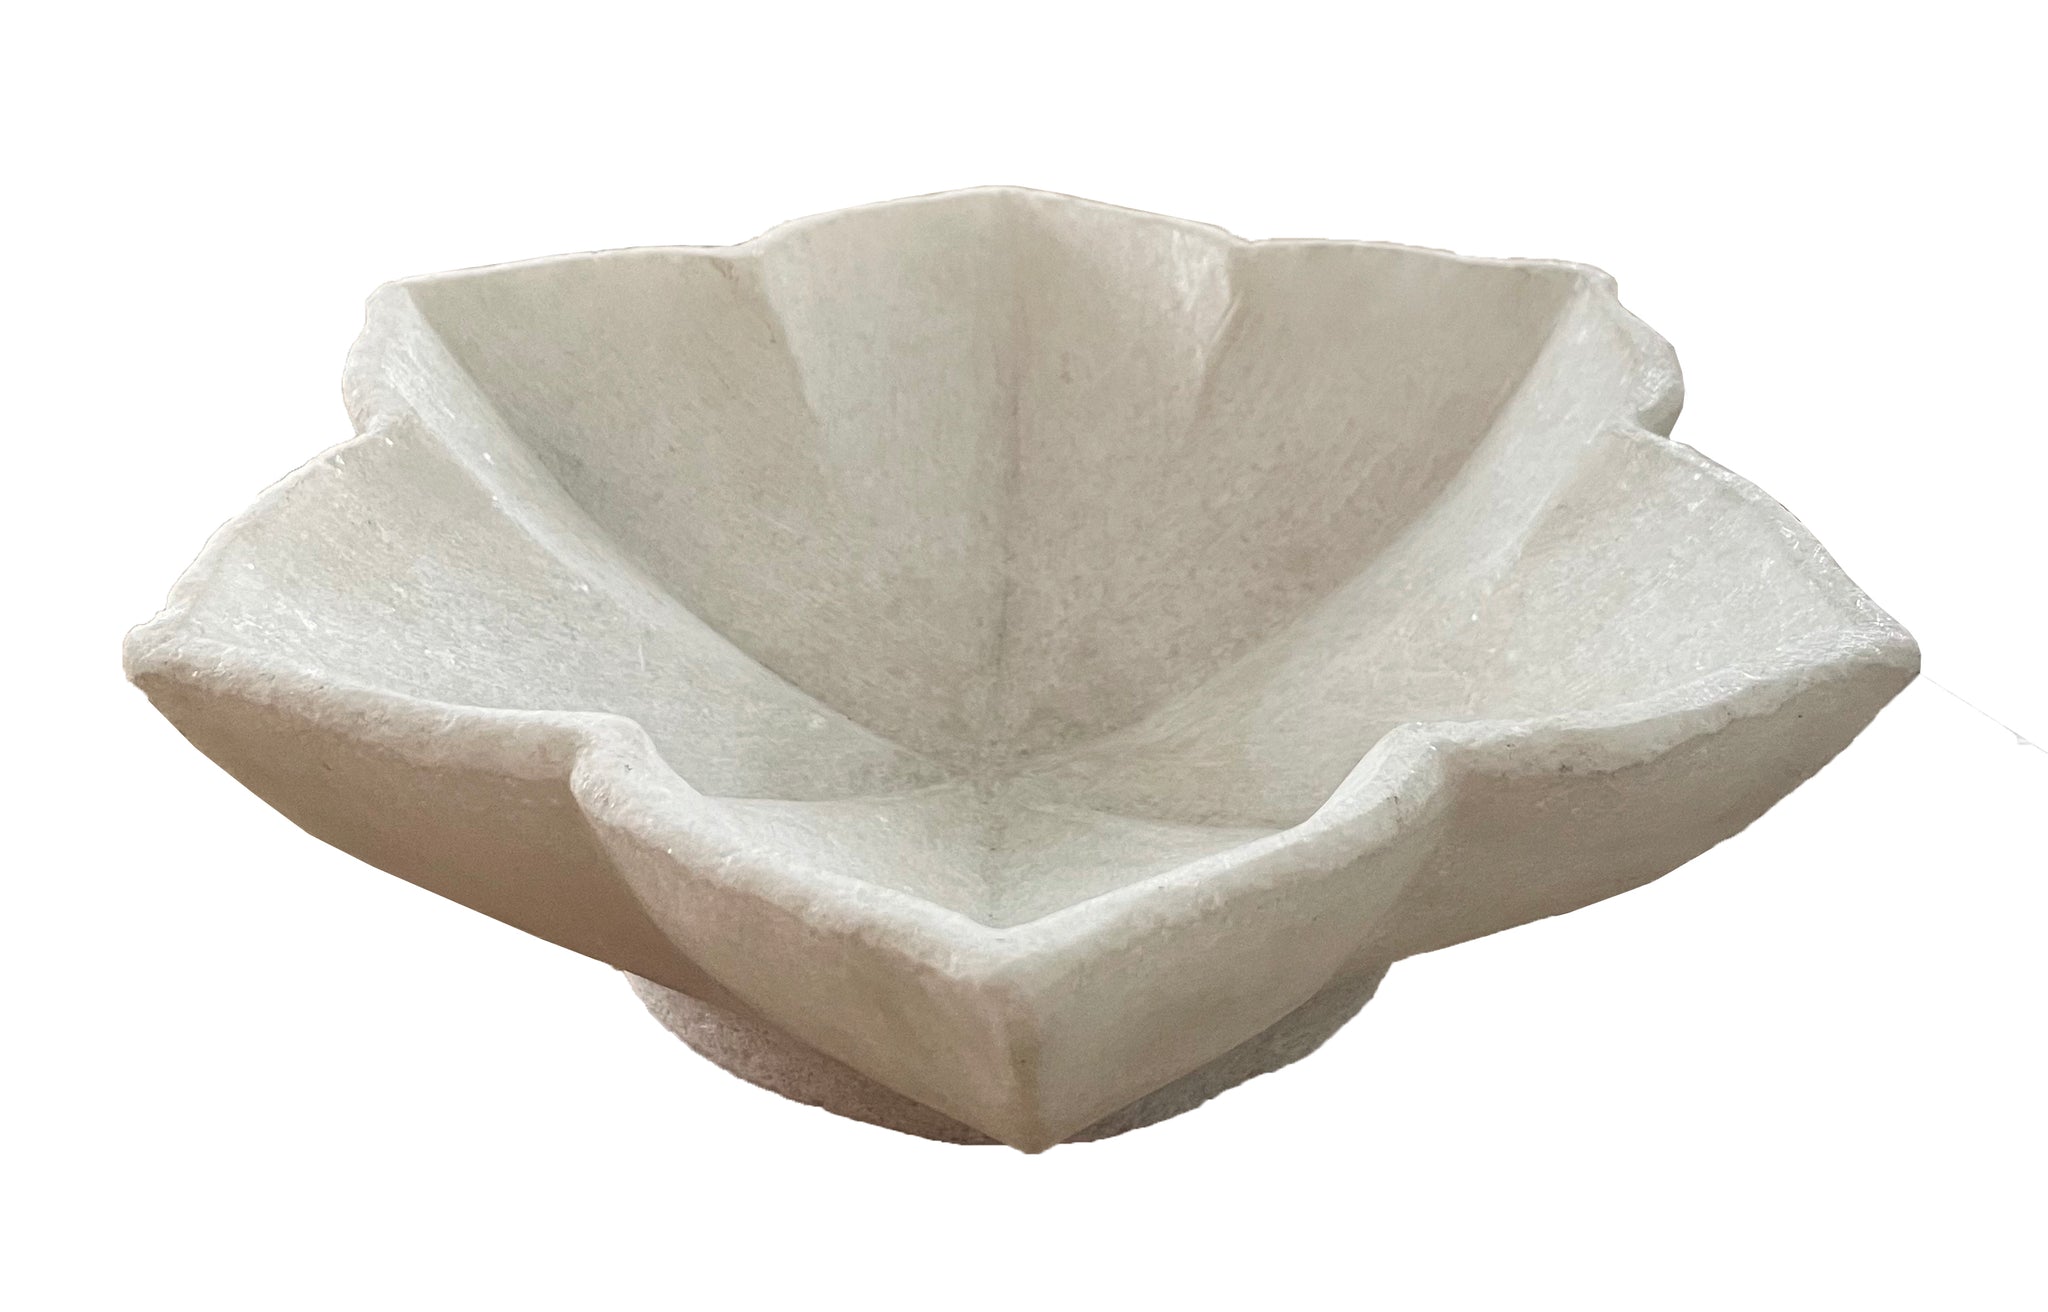 Marble Lotus Bowl